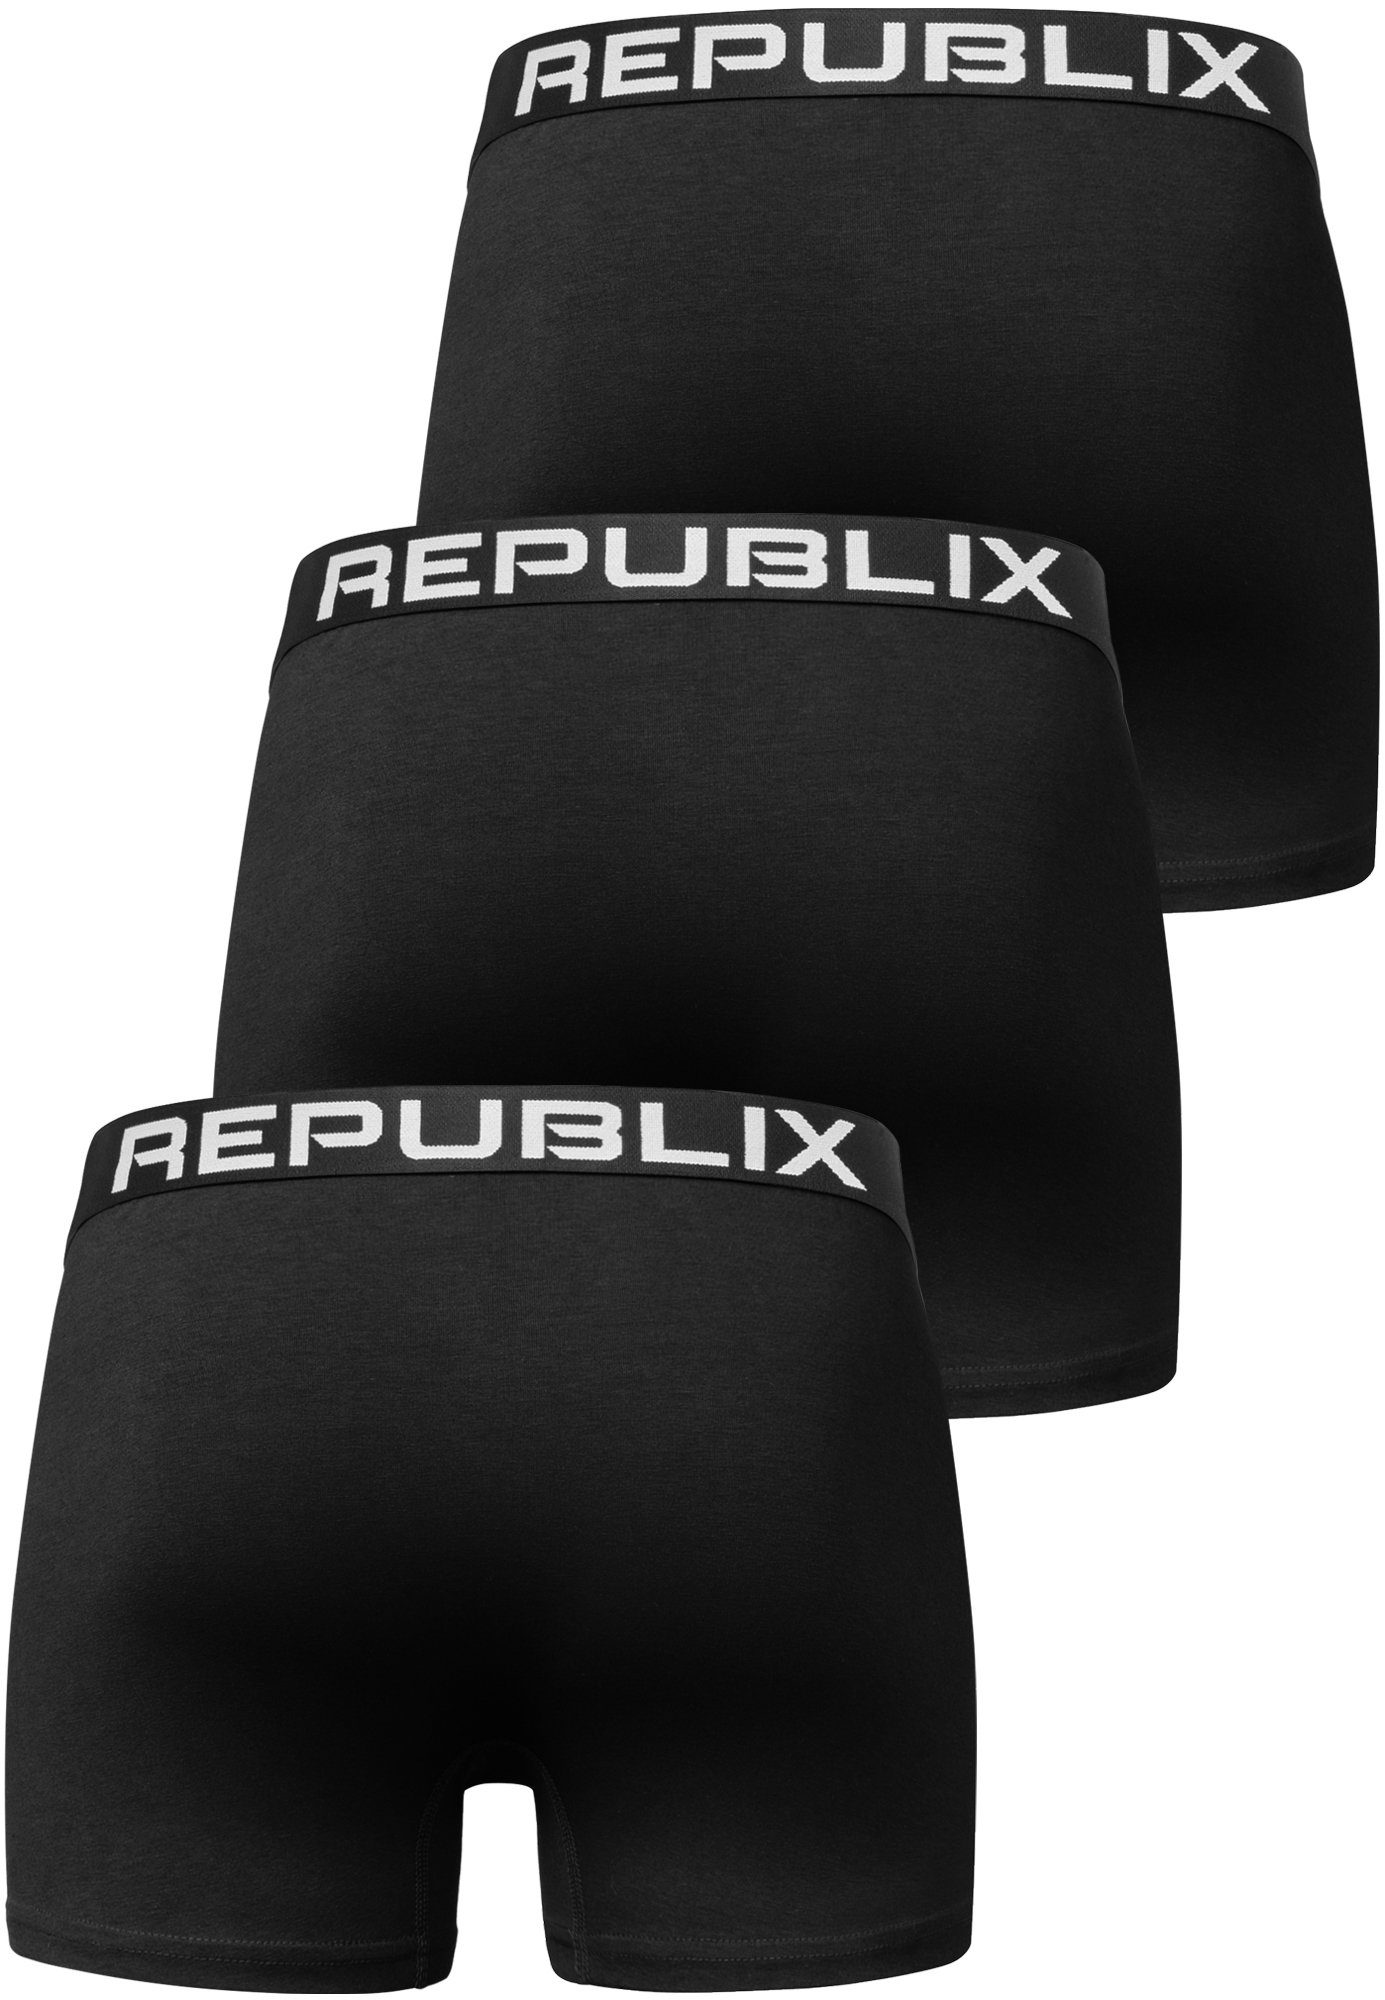 REPUBLIX Boxershorts (3er-Pack) Baumwolle Unterhose DON Unterwäsche Herren Männer Schwarz/Schwarz